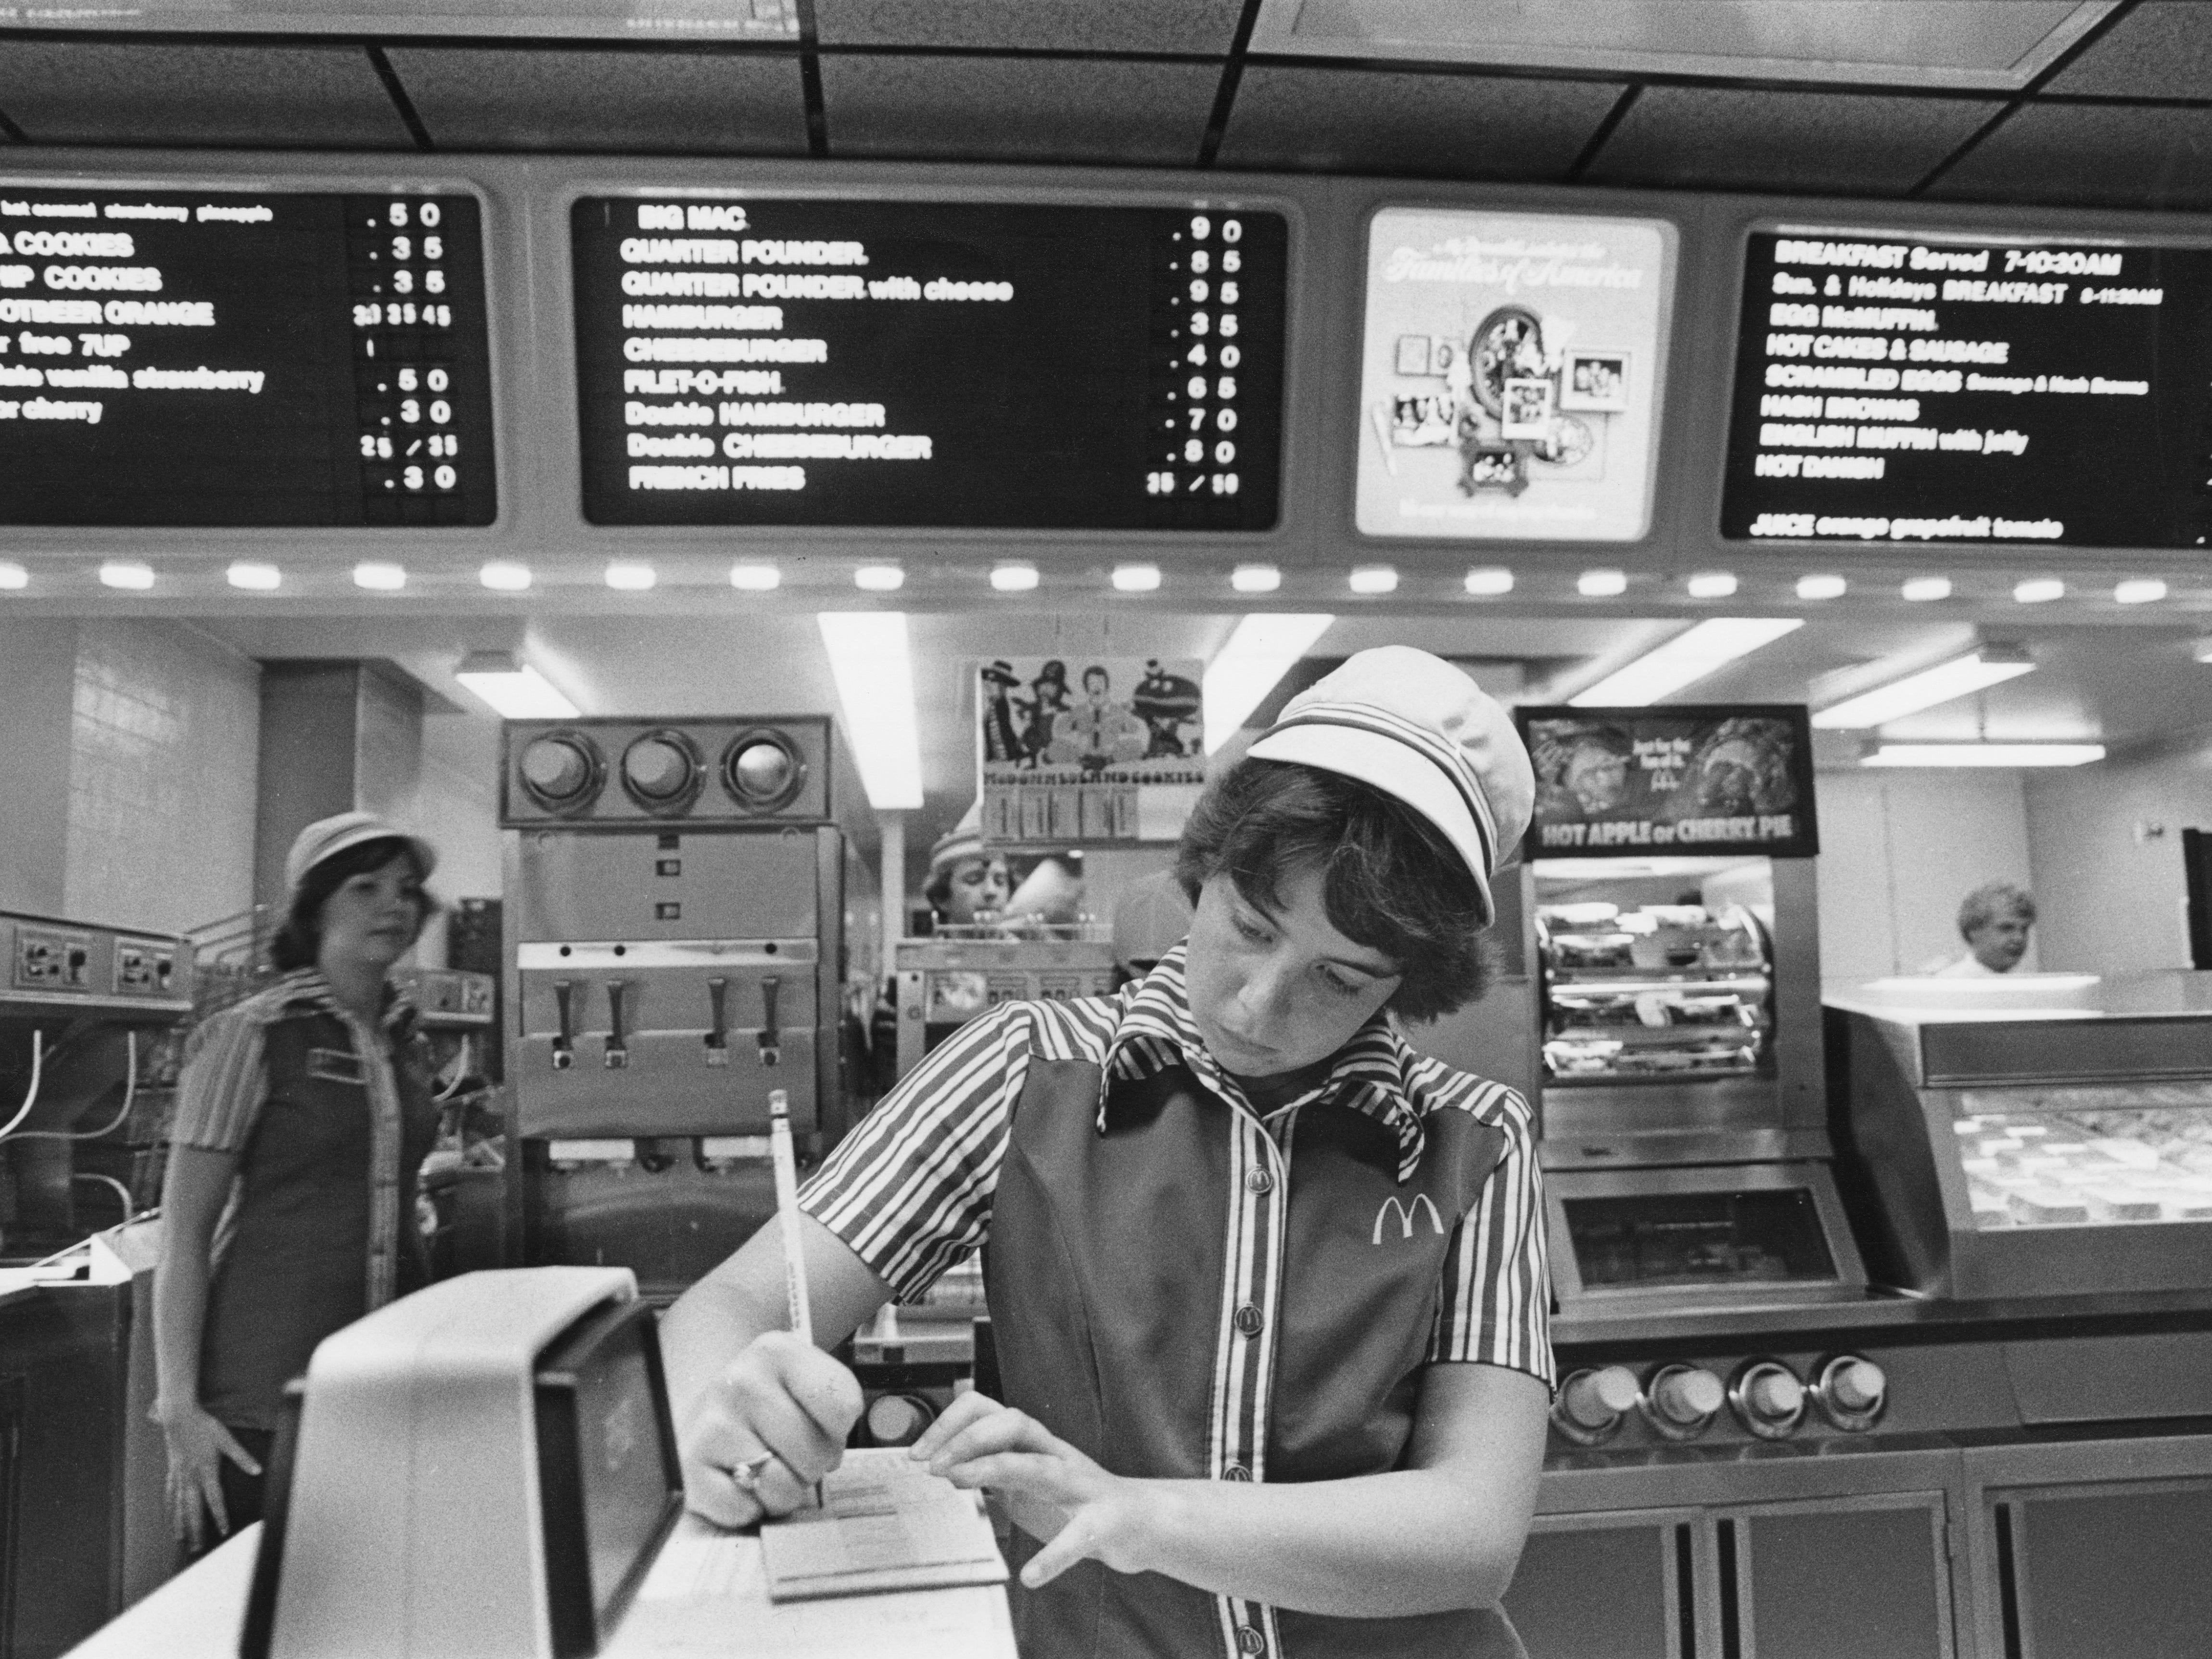 Ein Mitarbeiter macht sich 1978 an der Theke von McDonald's in Southfield, Michigan, Notizen.